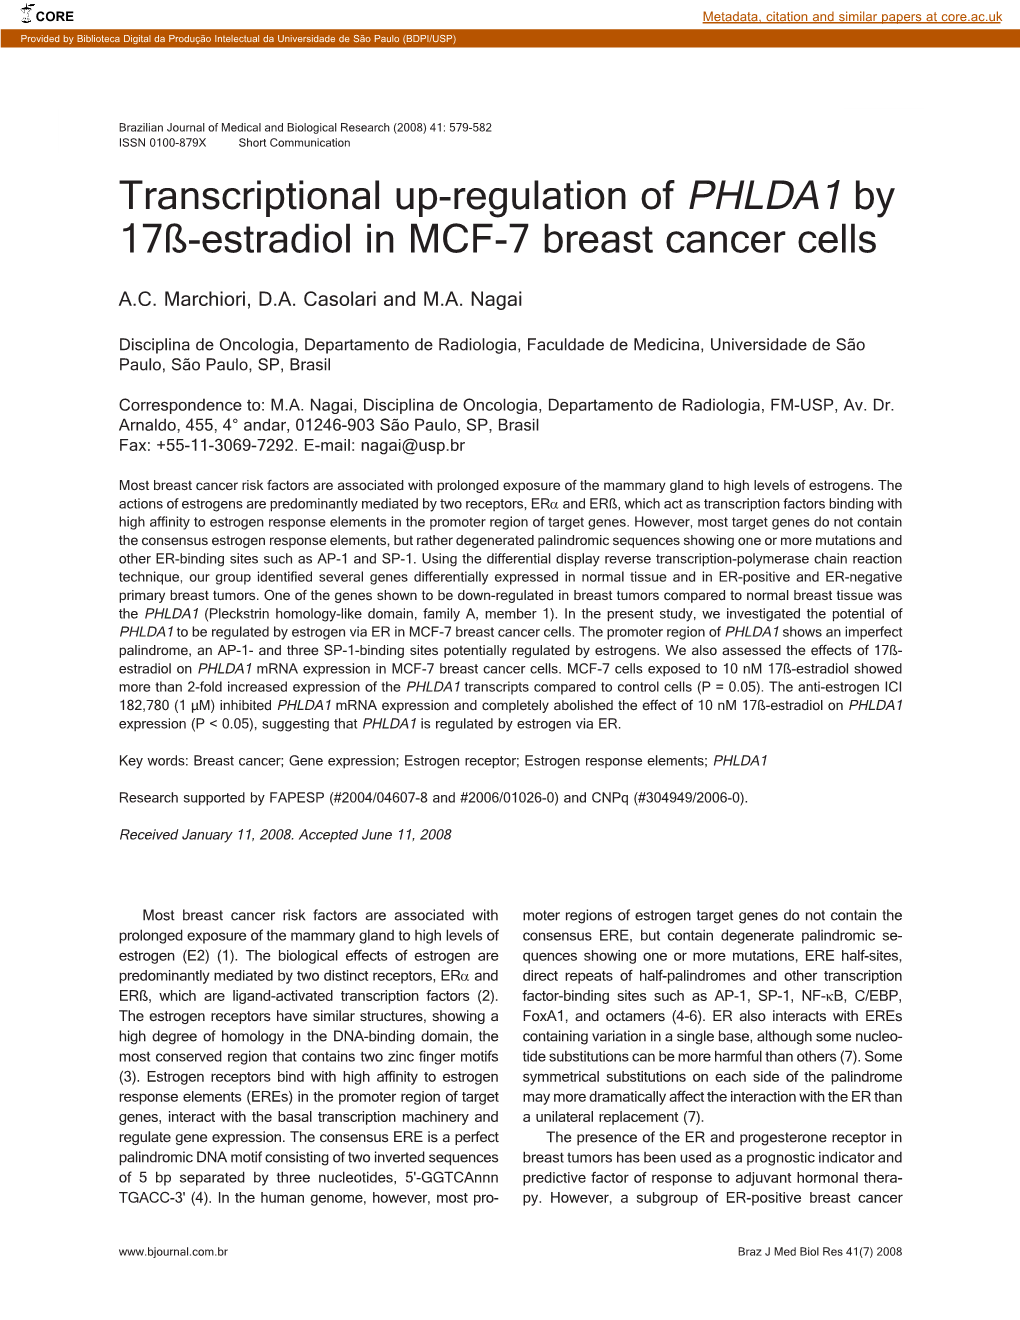 Transcriptional Up-Regulation of PHLDA1 by 17ß-Estradiol in MCF-7 Breast Cancer Cells